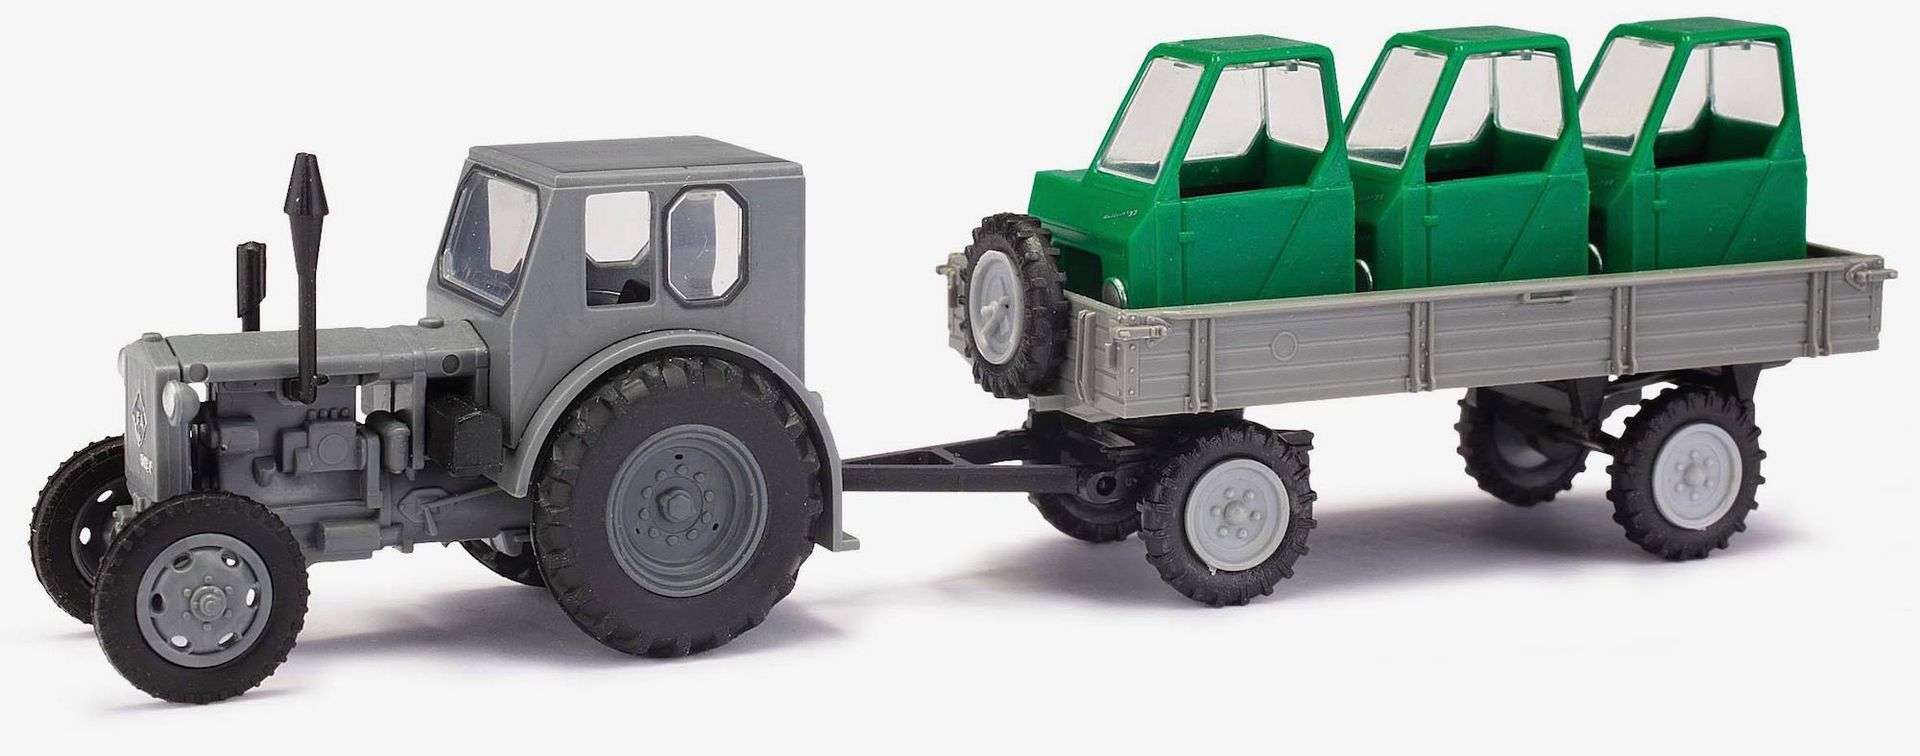 Melhose 210006430 - Traktor Pionier und Anhänger beladen mit Fahrerhäusern H0 1:87